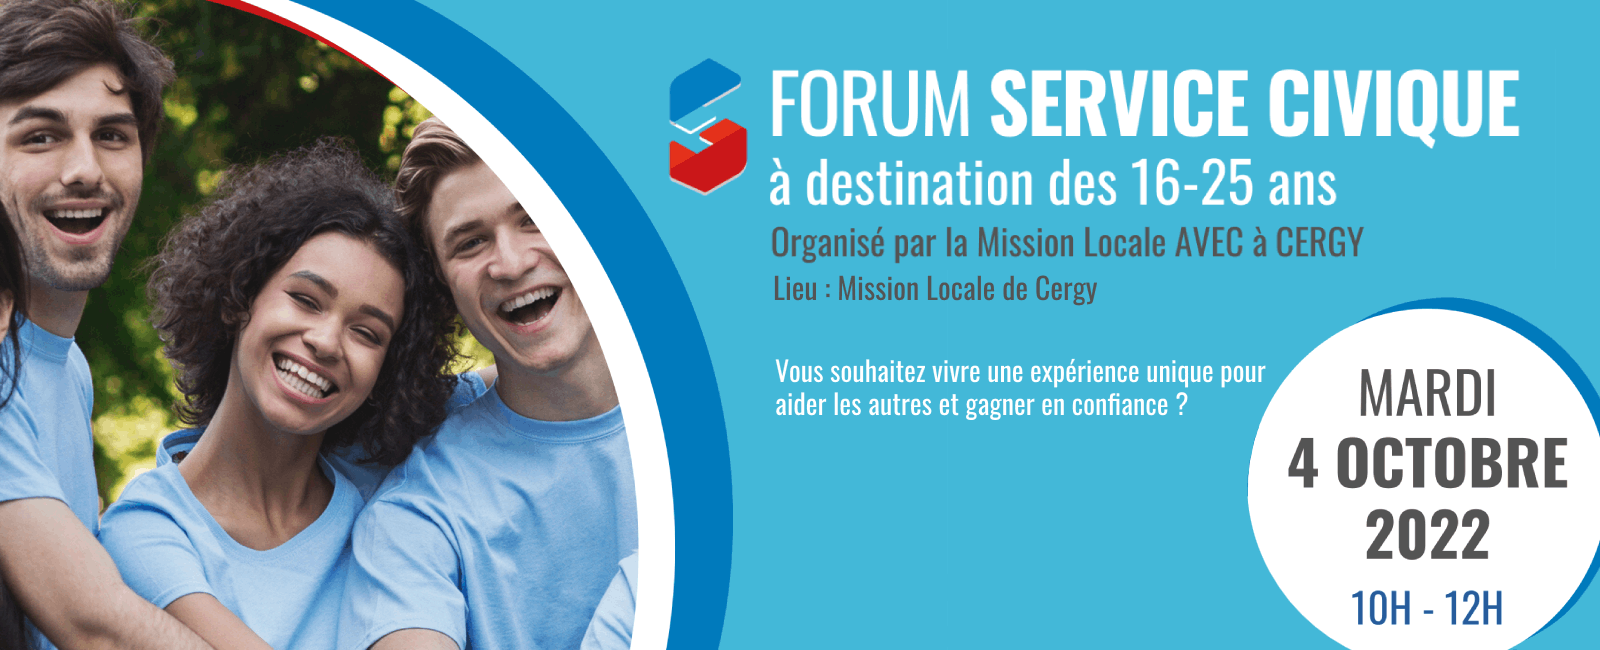 Visuel Forum Service Civique